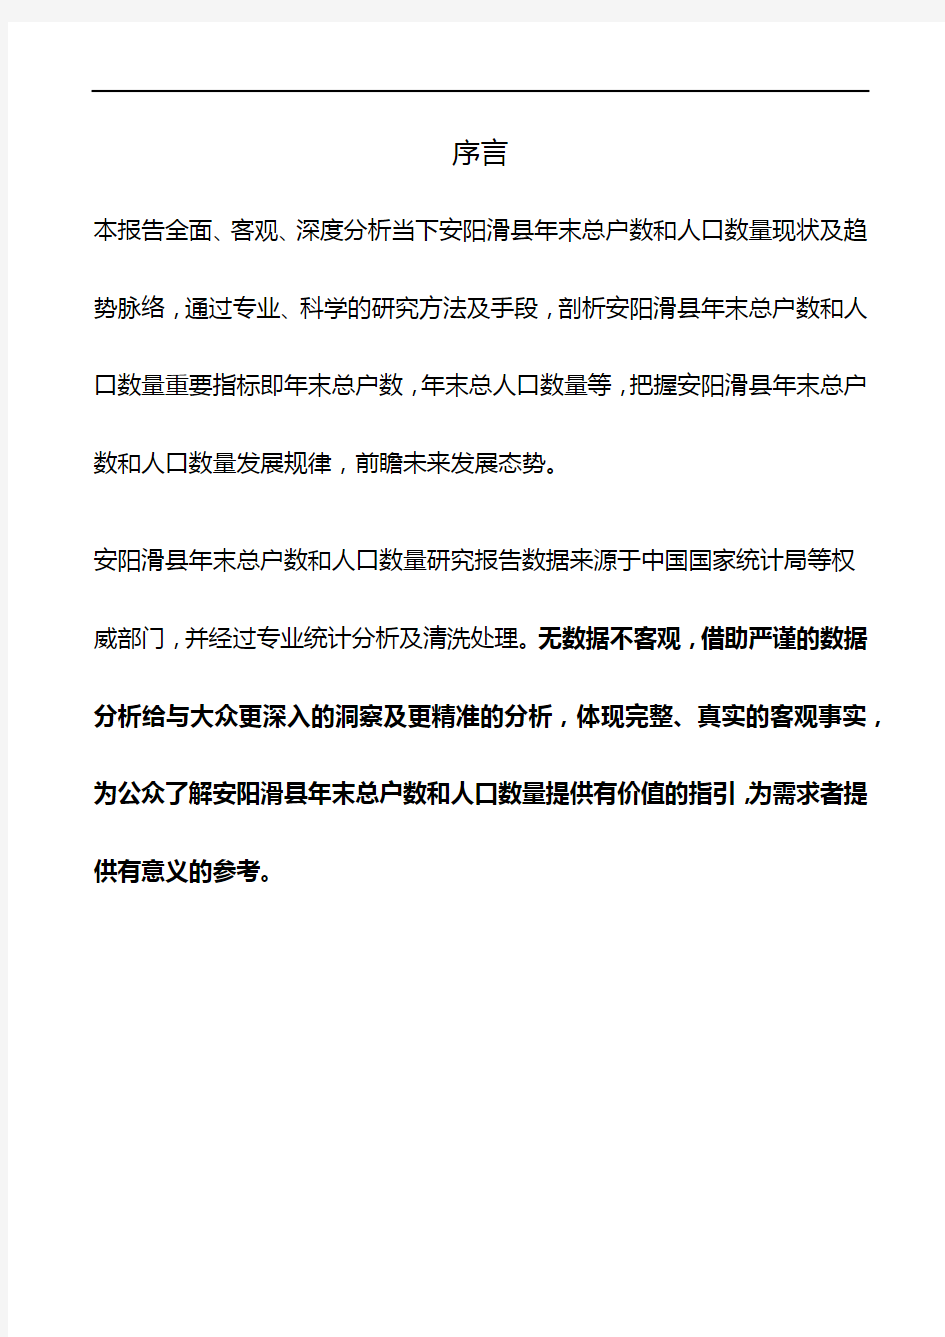 河南省安阳滑县年末总户数和人口数量数据研究报告2019版